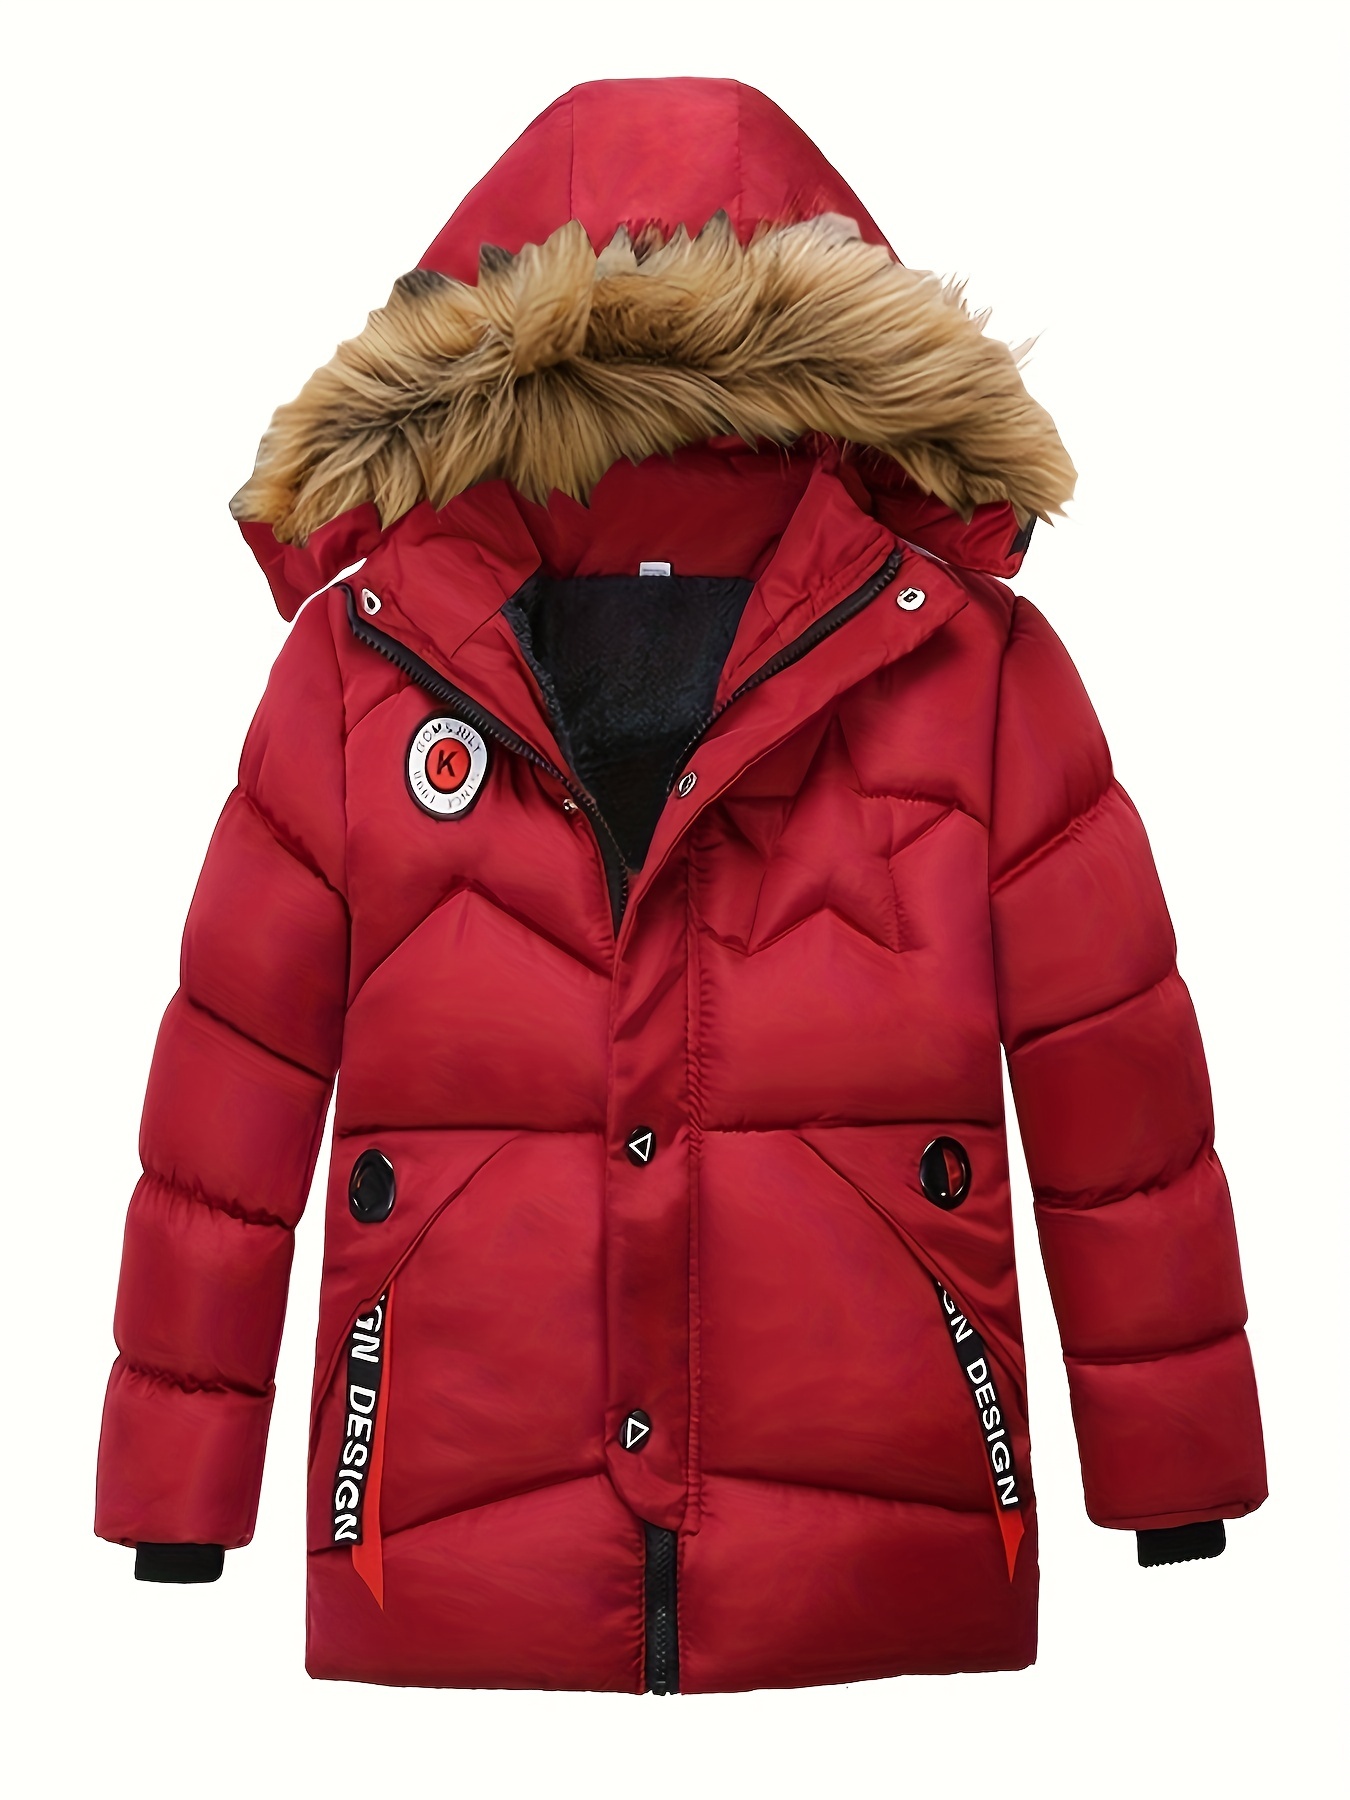 Rouge--Veste d'hiver enfant Camouflage grand col fourrure-30 degrés  vêtements enfants garçon chaud doudoune coton veste